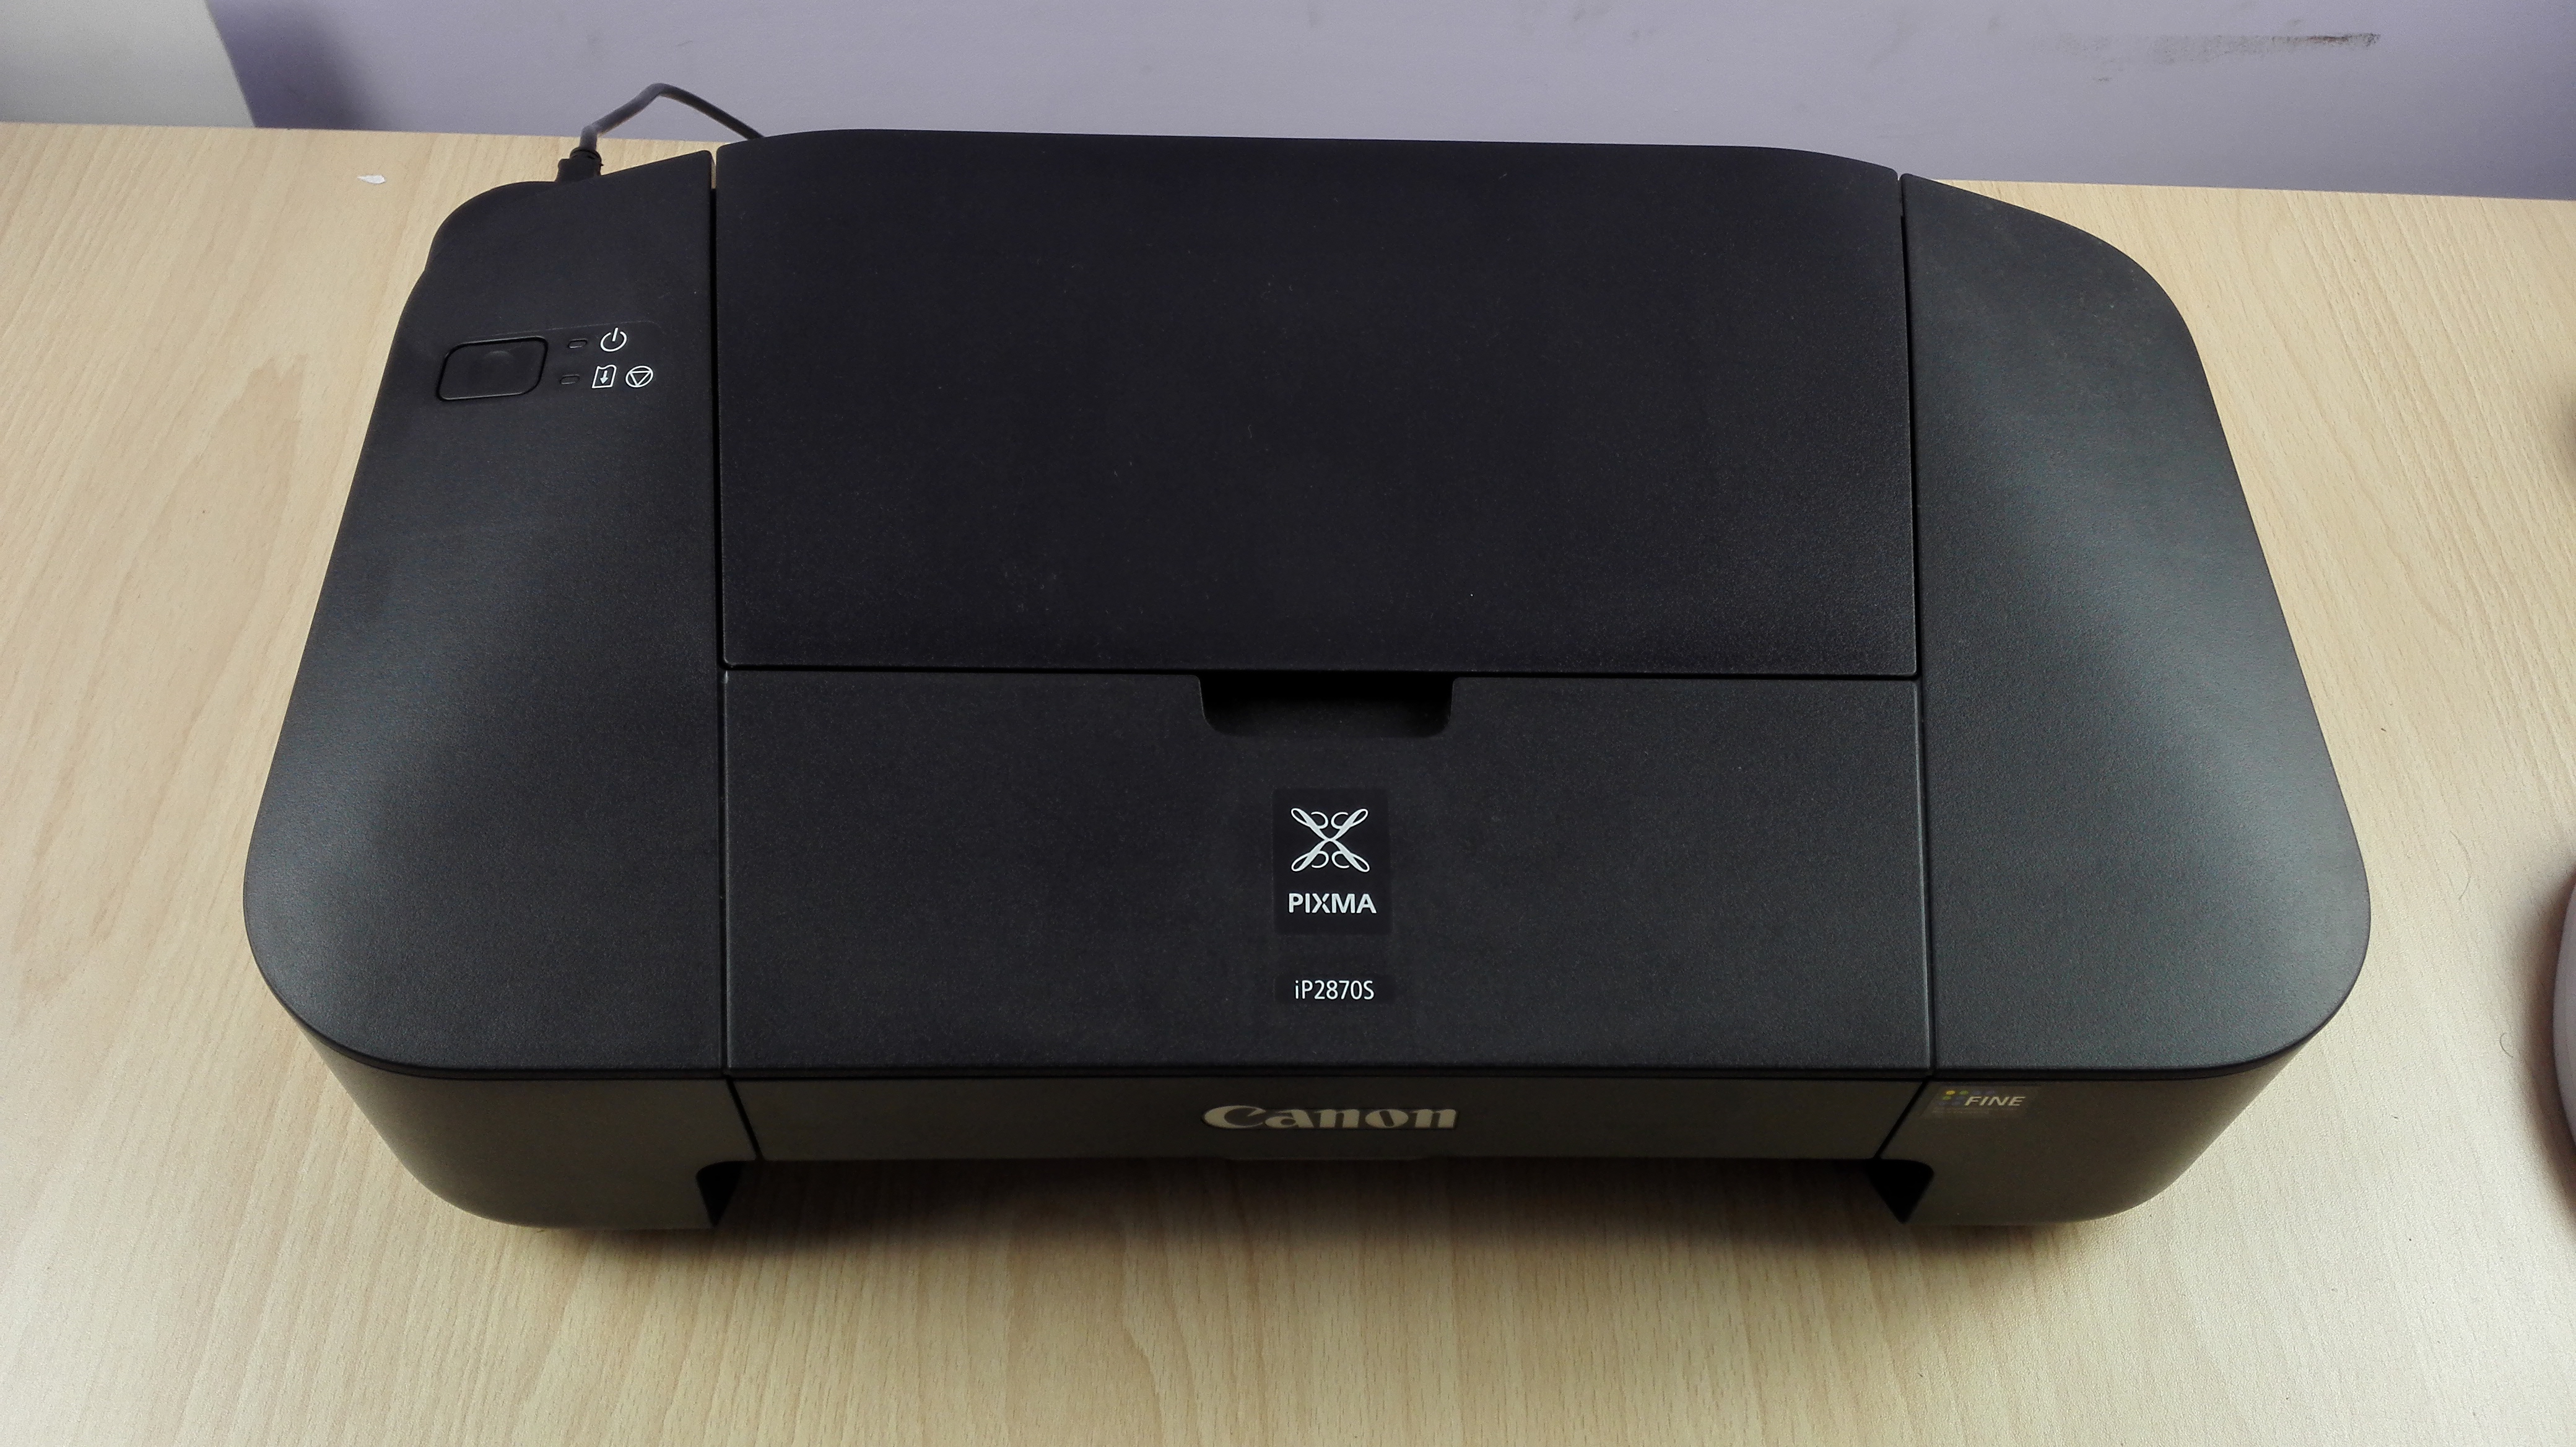 Recensione, caratteristiche e panoramica della stampante Canon Pixma IP 2870S